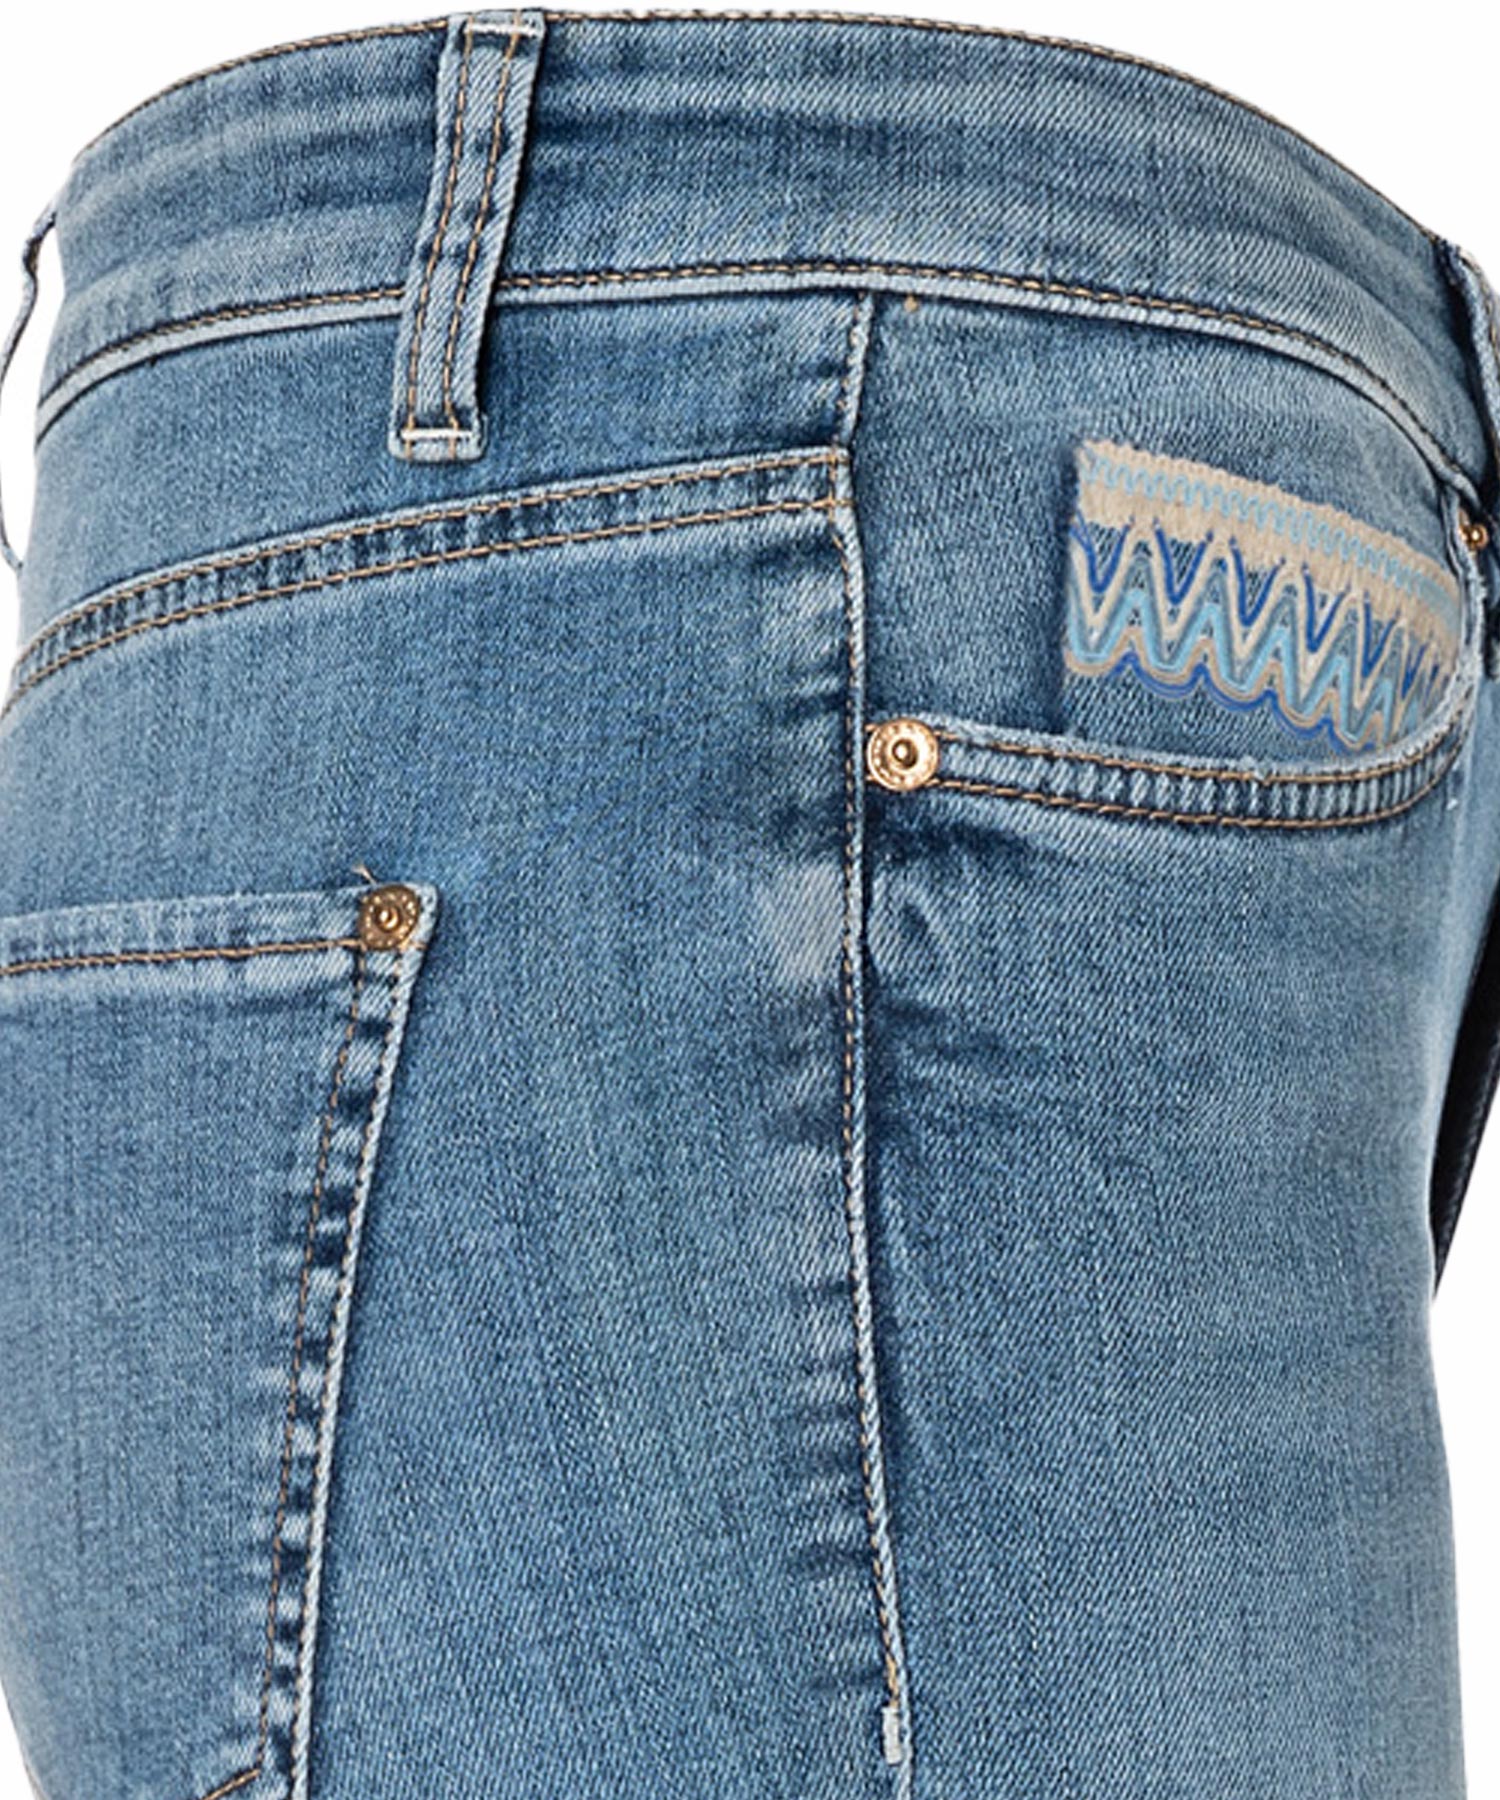 Jeans Piper short von Cambio in mittelblauer Waschung